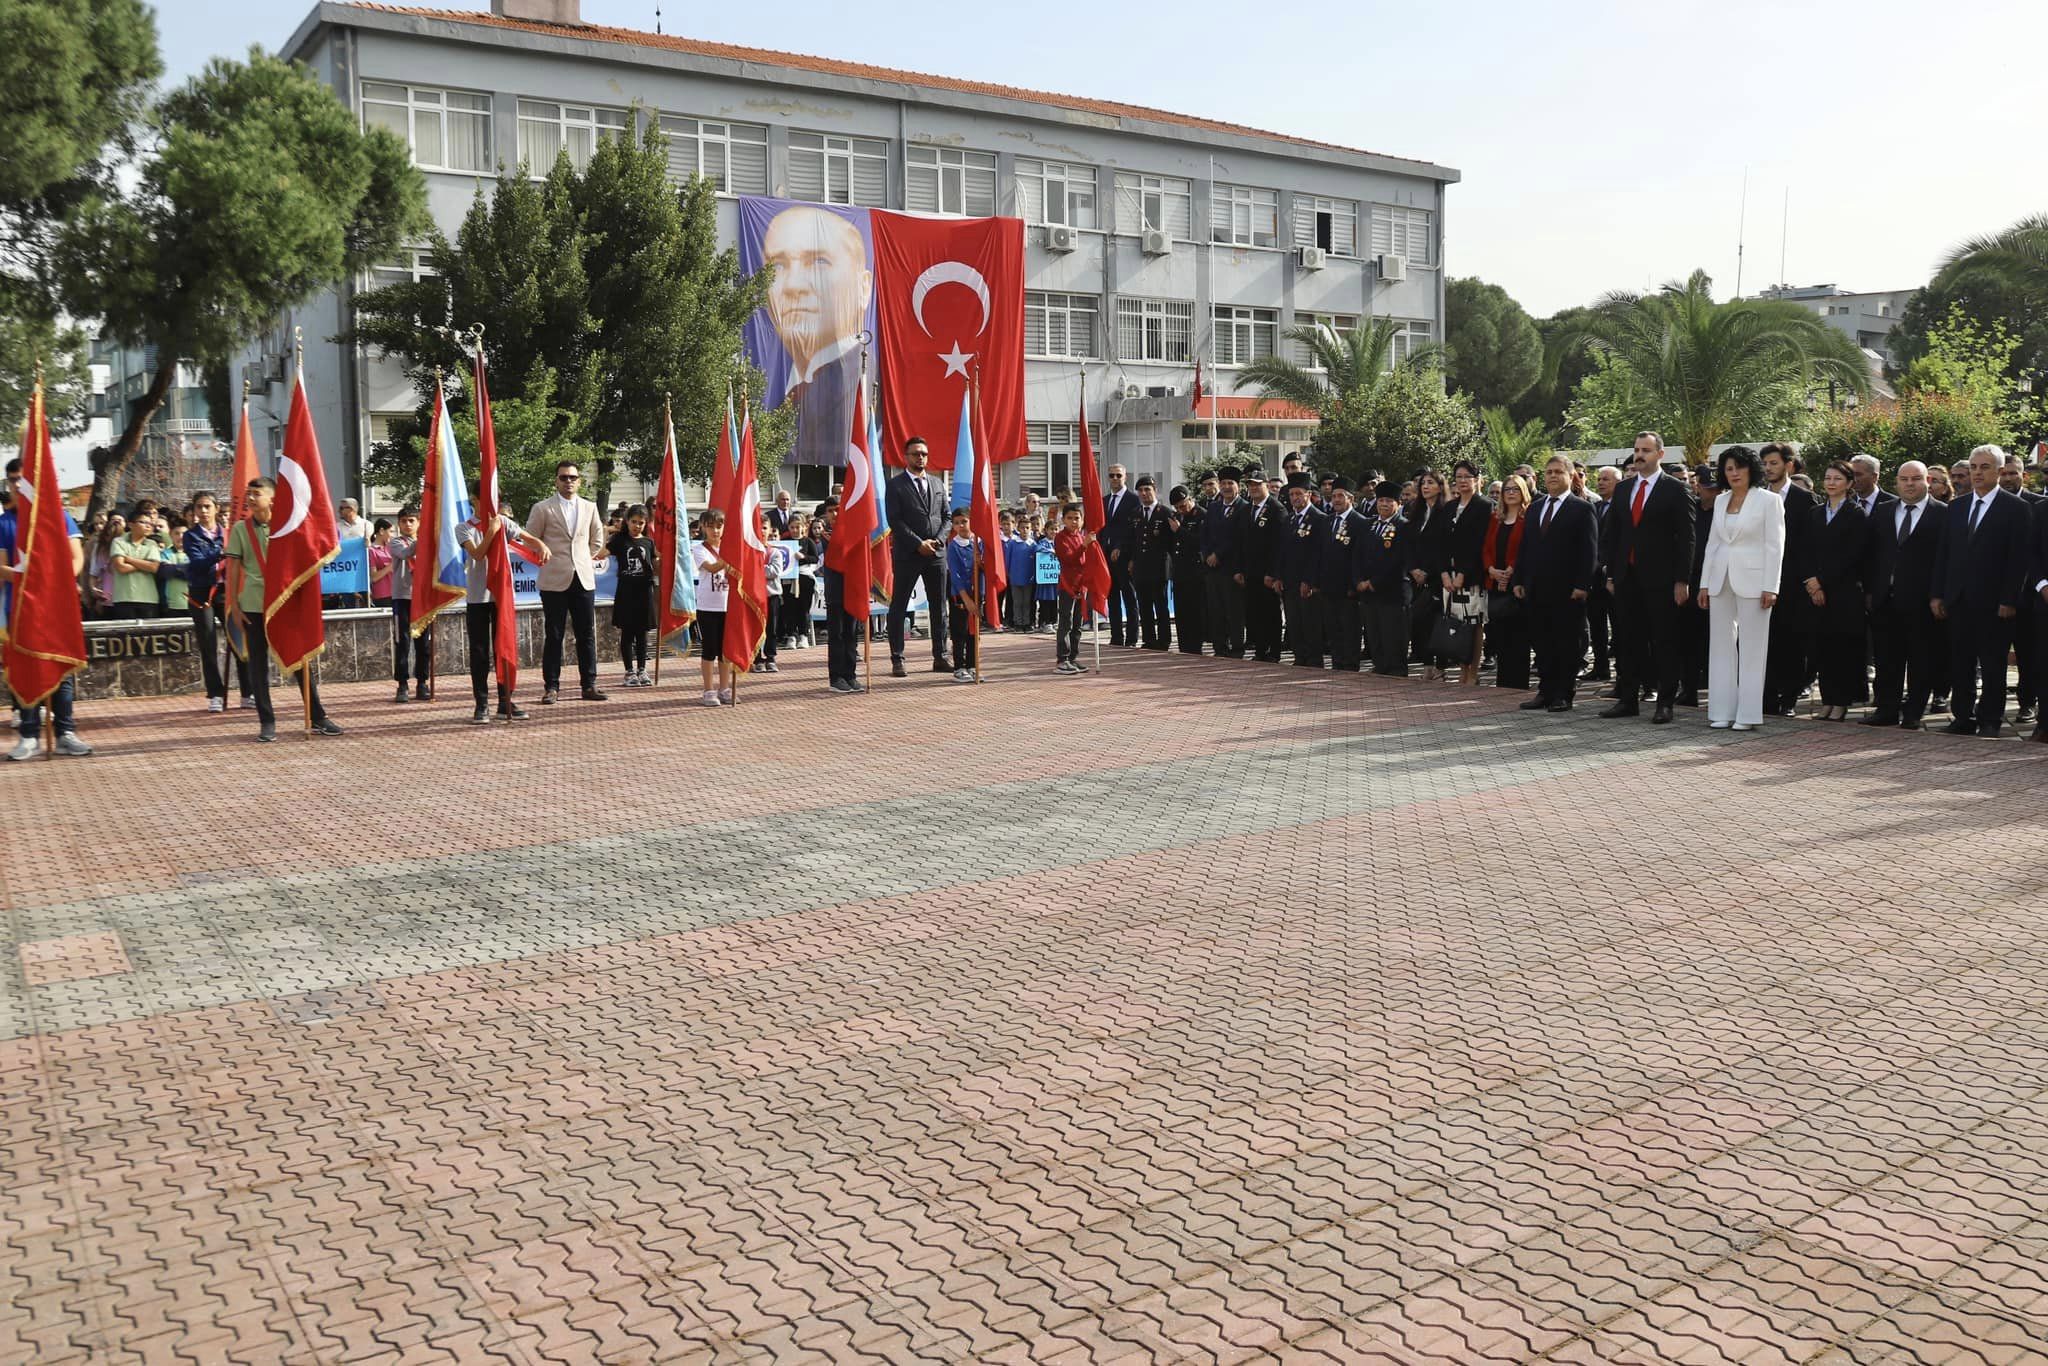 Kınık Belediyesi Türkiye Büyük Millet Meclisi'nin açılışının 104’üncü yıl dönümü ve 23 Nisan Ulusal Egemenlik ve Çocuk Bayramı, tüm yurtta olduğu gibi Kınık’ta da büyük bir coşku ile kutlandı.